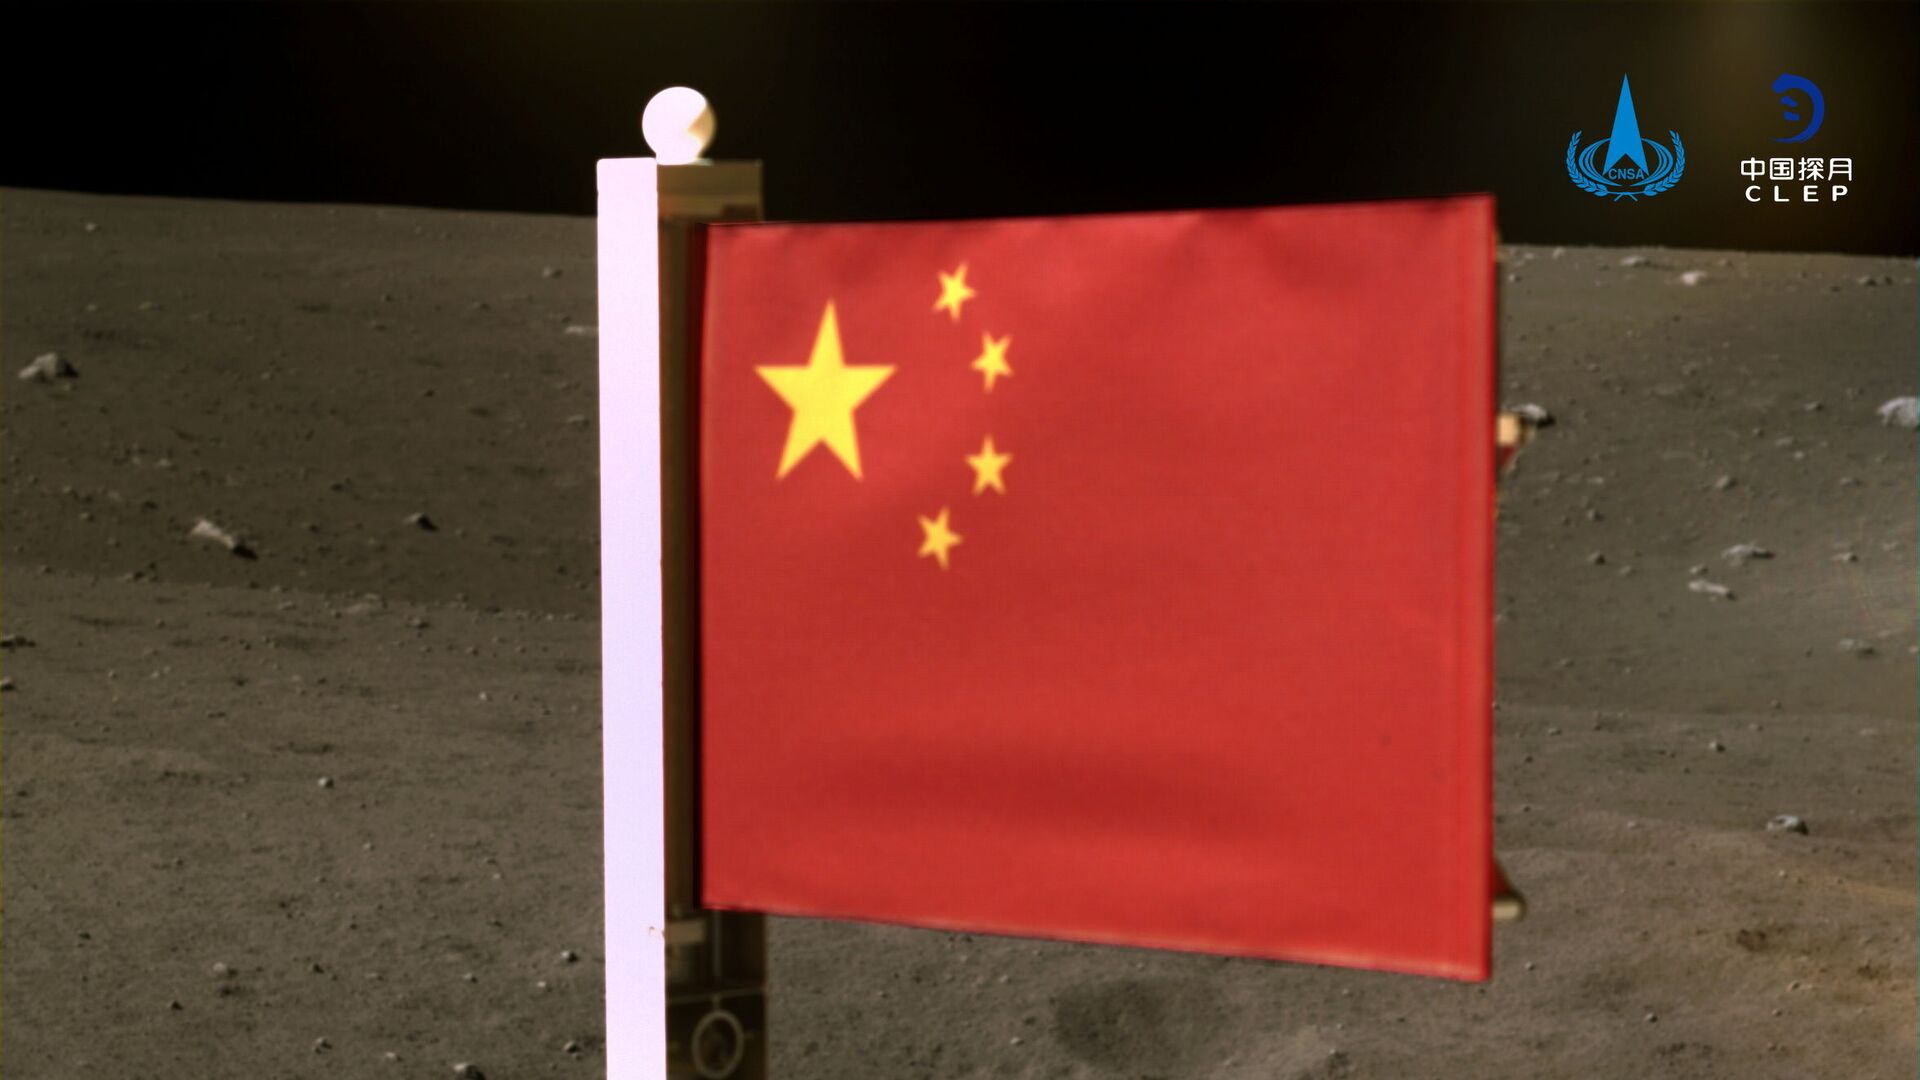  علم الصين الذي أوصله مسبار فضائي تشانغ آه-5 لجمع عينات من القمر وإعادتها، الصين 4 ديسمبر 2020 - سبوتنيك عربي, 1920, 20.07.2021